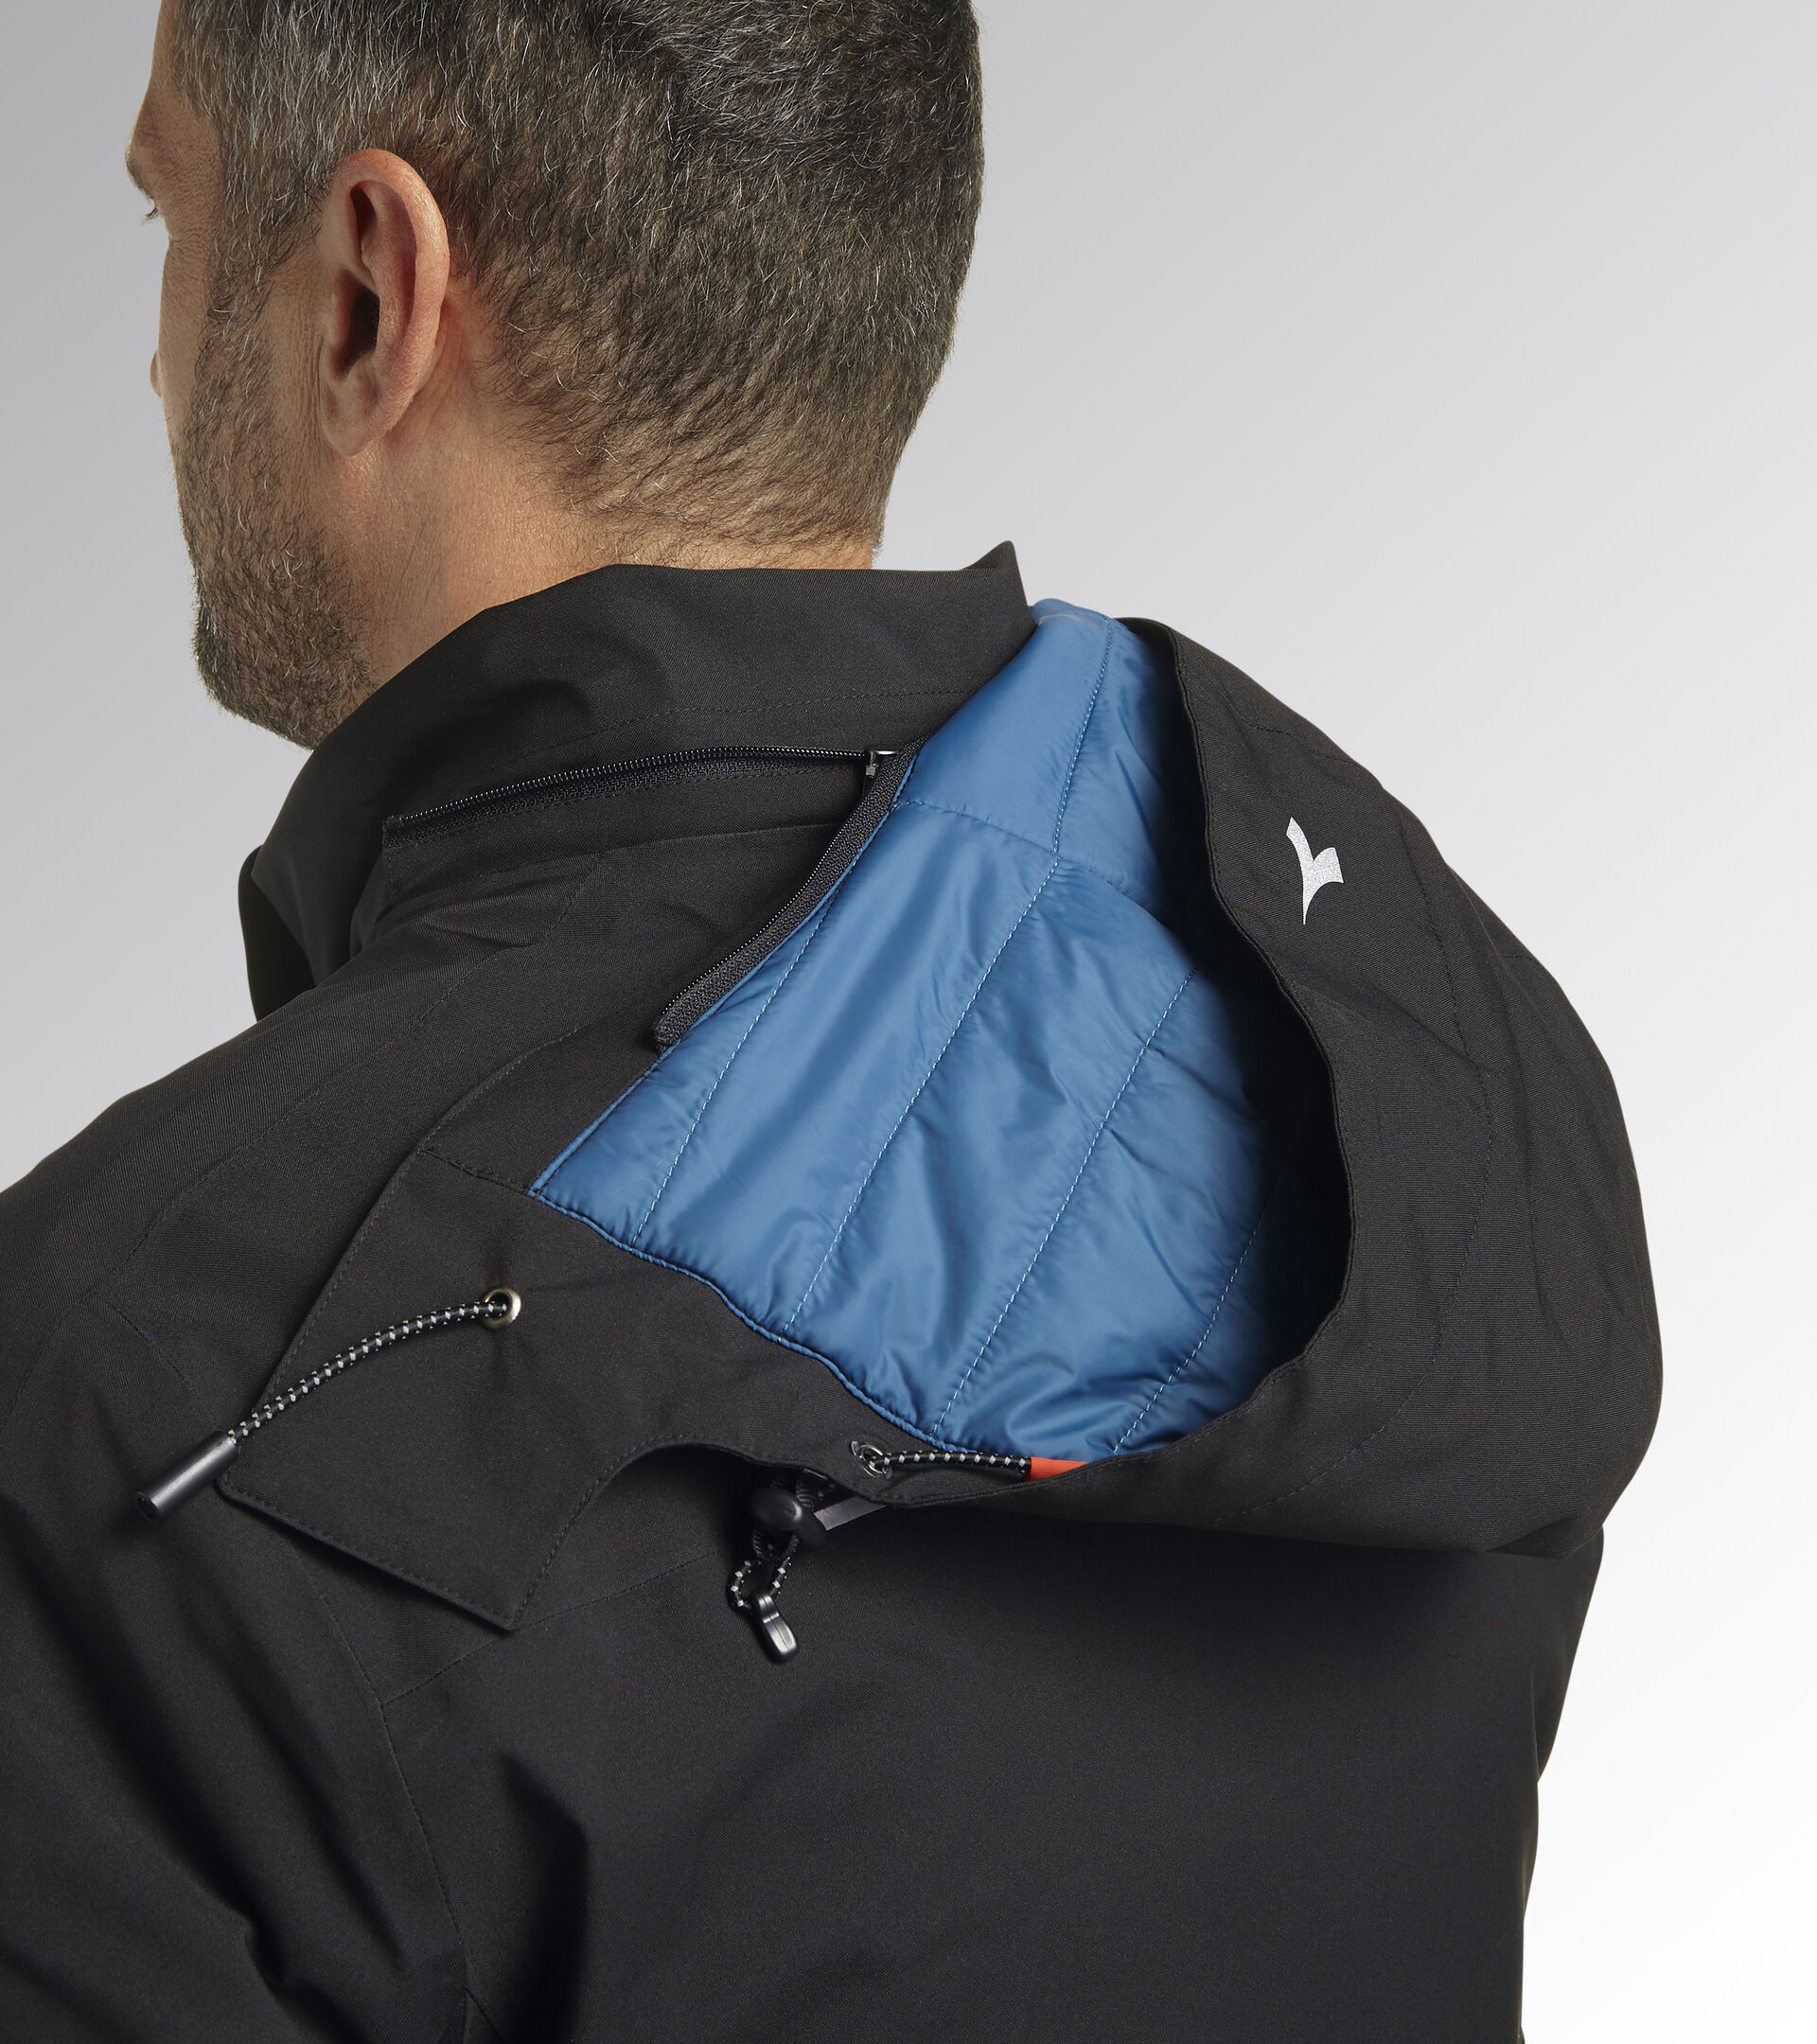 Work jacket PADDED JACKET CROSS BLACK - Utility